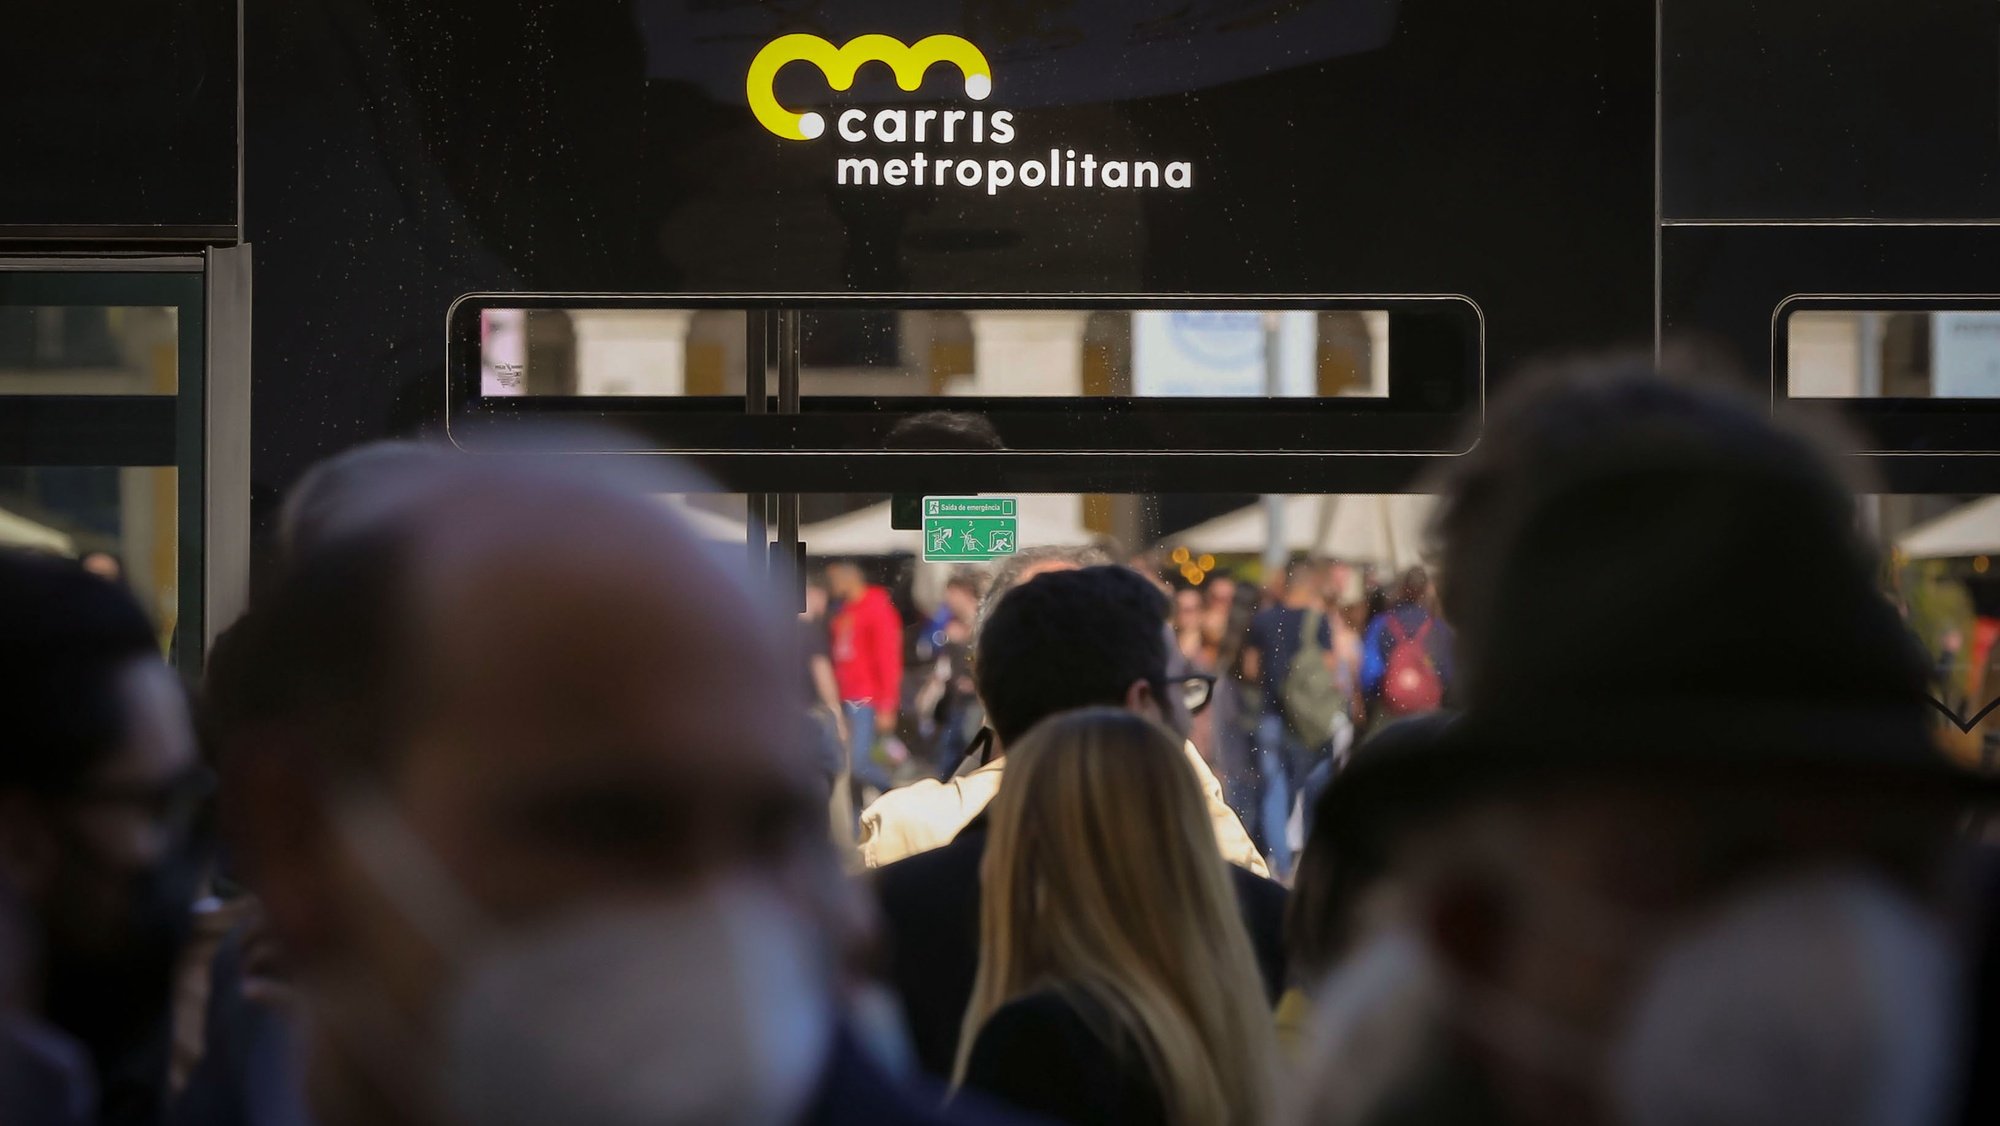 Cerimónia de lançamento da Carris Metropolitana realizada no Pátio da Galé, Lisboa, 1 de abril de 2022. O evento contou também com um pequeno desfile de moda, para dar a conhecer o fardamento da Carris Metropolitana, desenhado por Nuno Gama, e a exibição, dos novos autocarros com a nova imagem da Carris Metropolitana. MANUEL DE ALMEIDA/LUSA